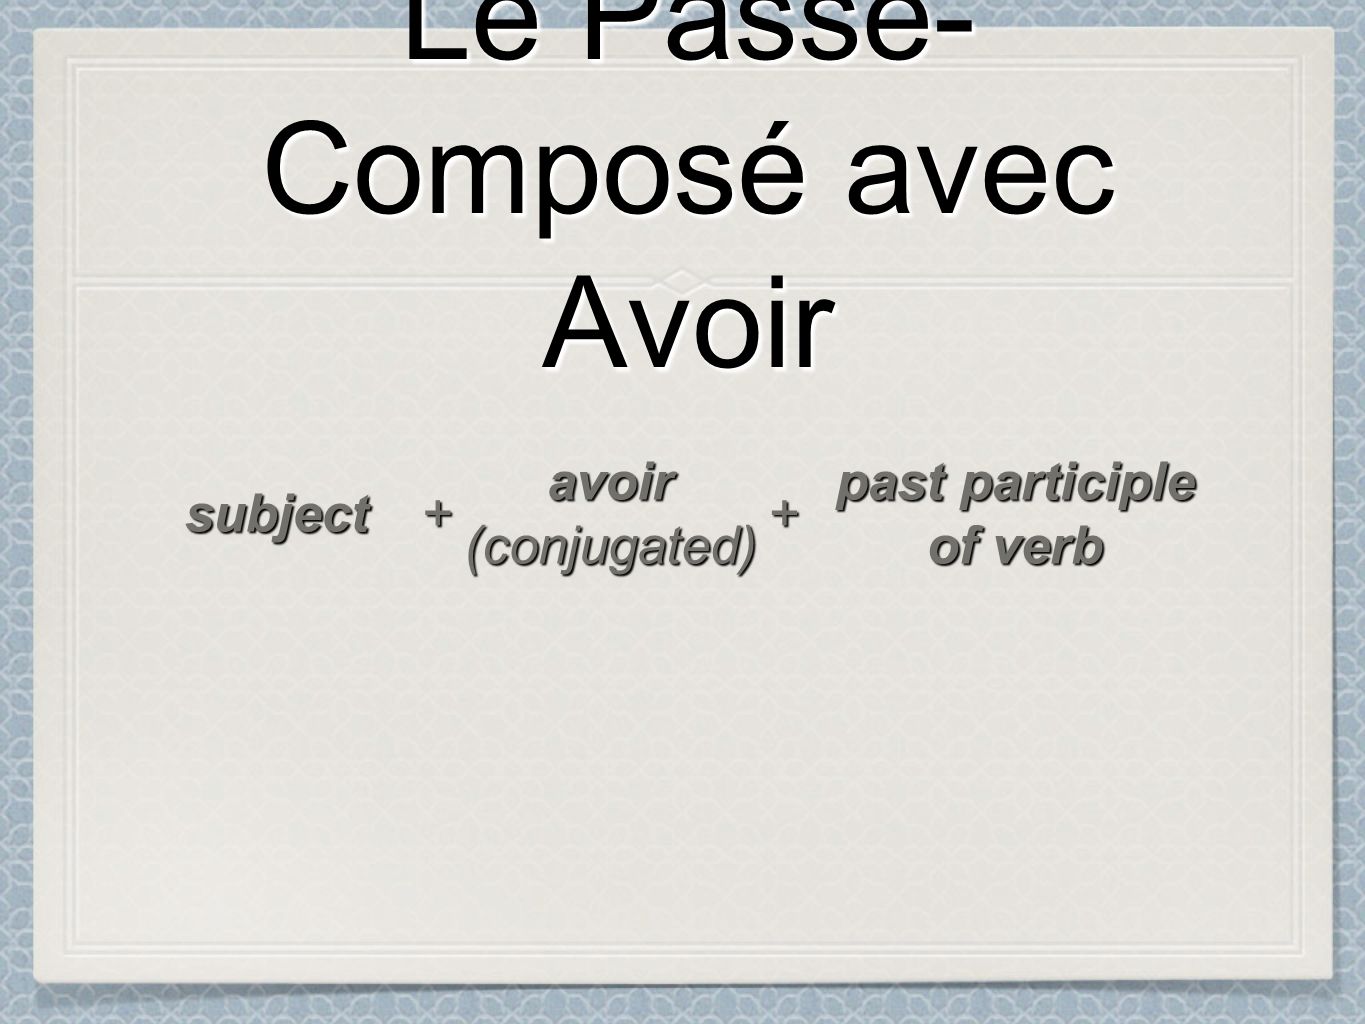 Le Passé- Composé avec Avoir Le Passé- Composé avec Avoir subject ++ avoir(conjugated) past participle of verb